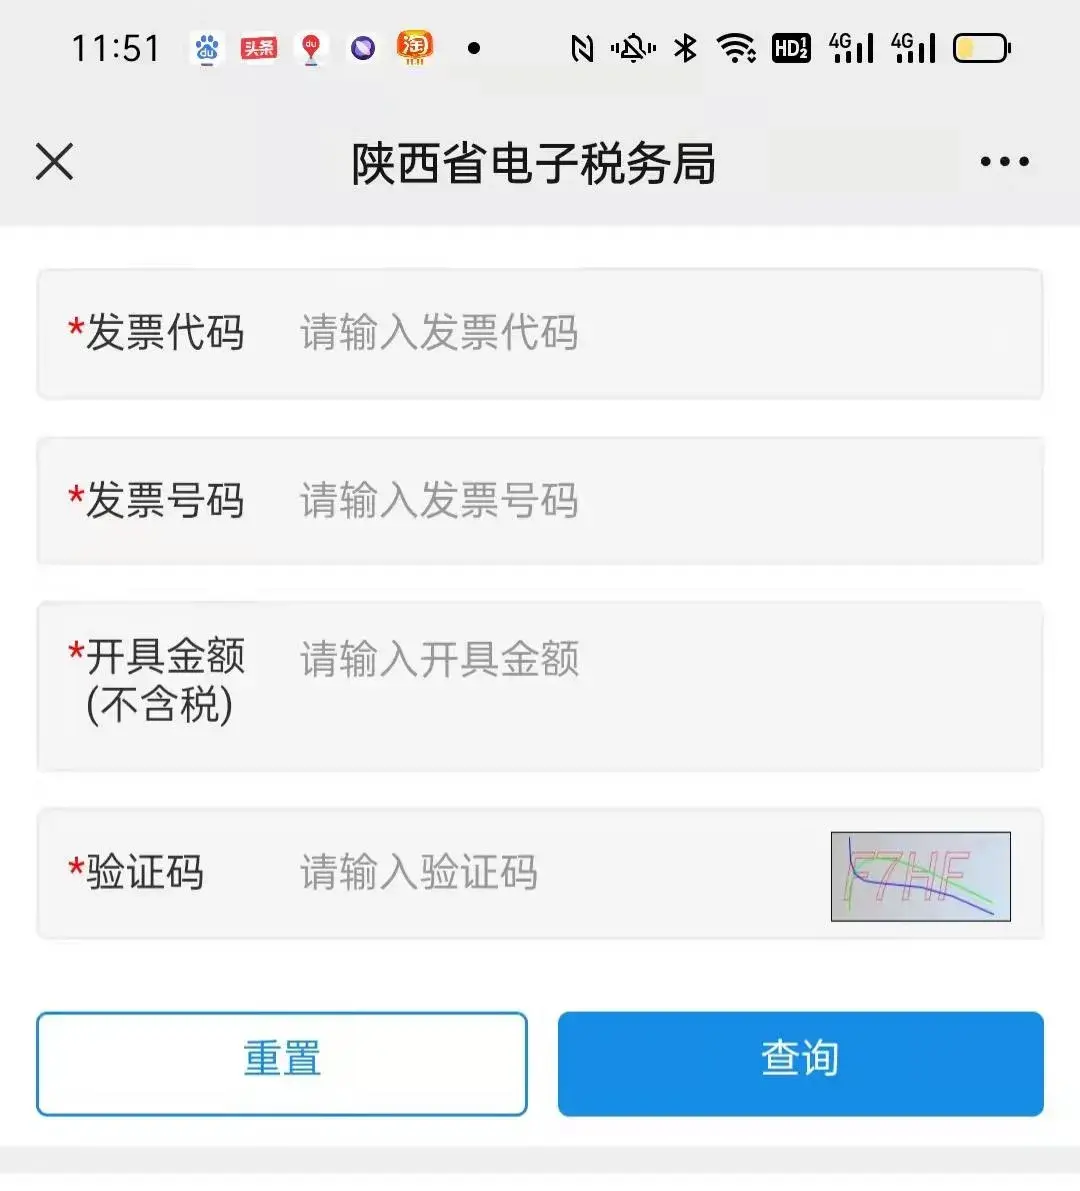 也可以通过陕西税务的微信公众号登陆电子税务局,进行发票真伪的